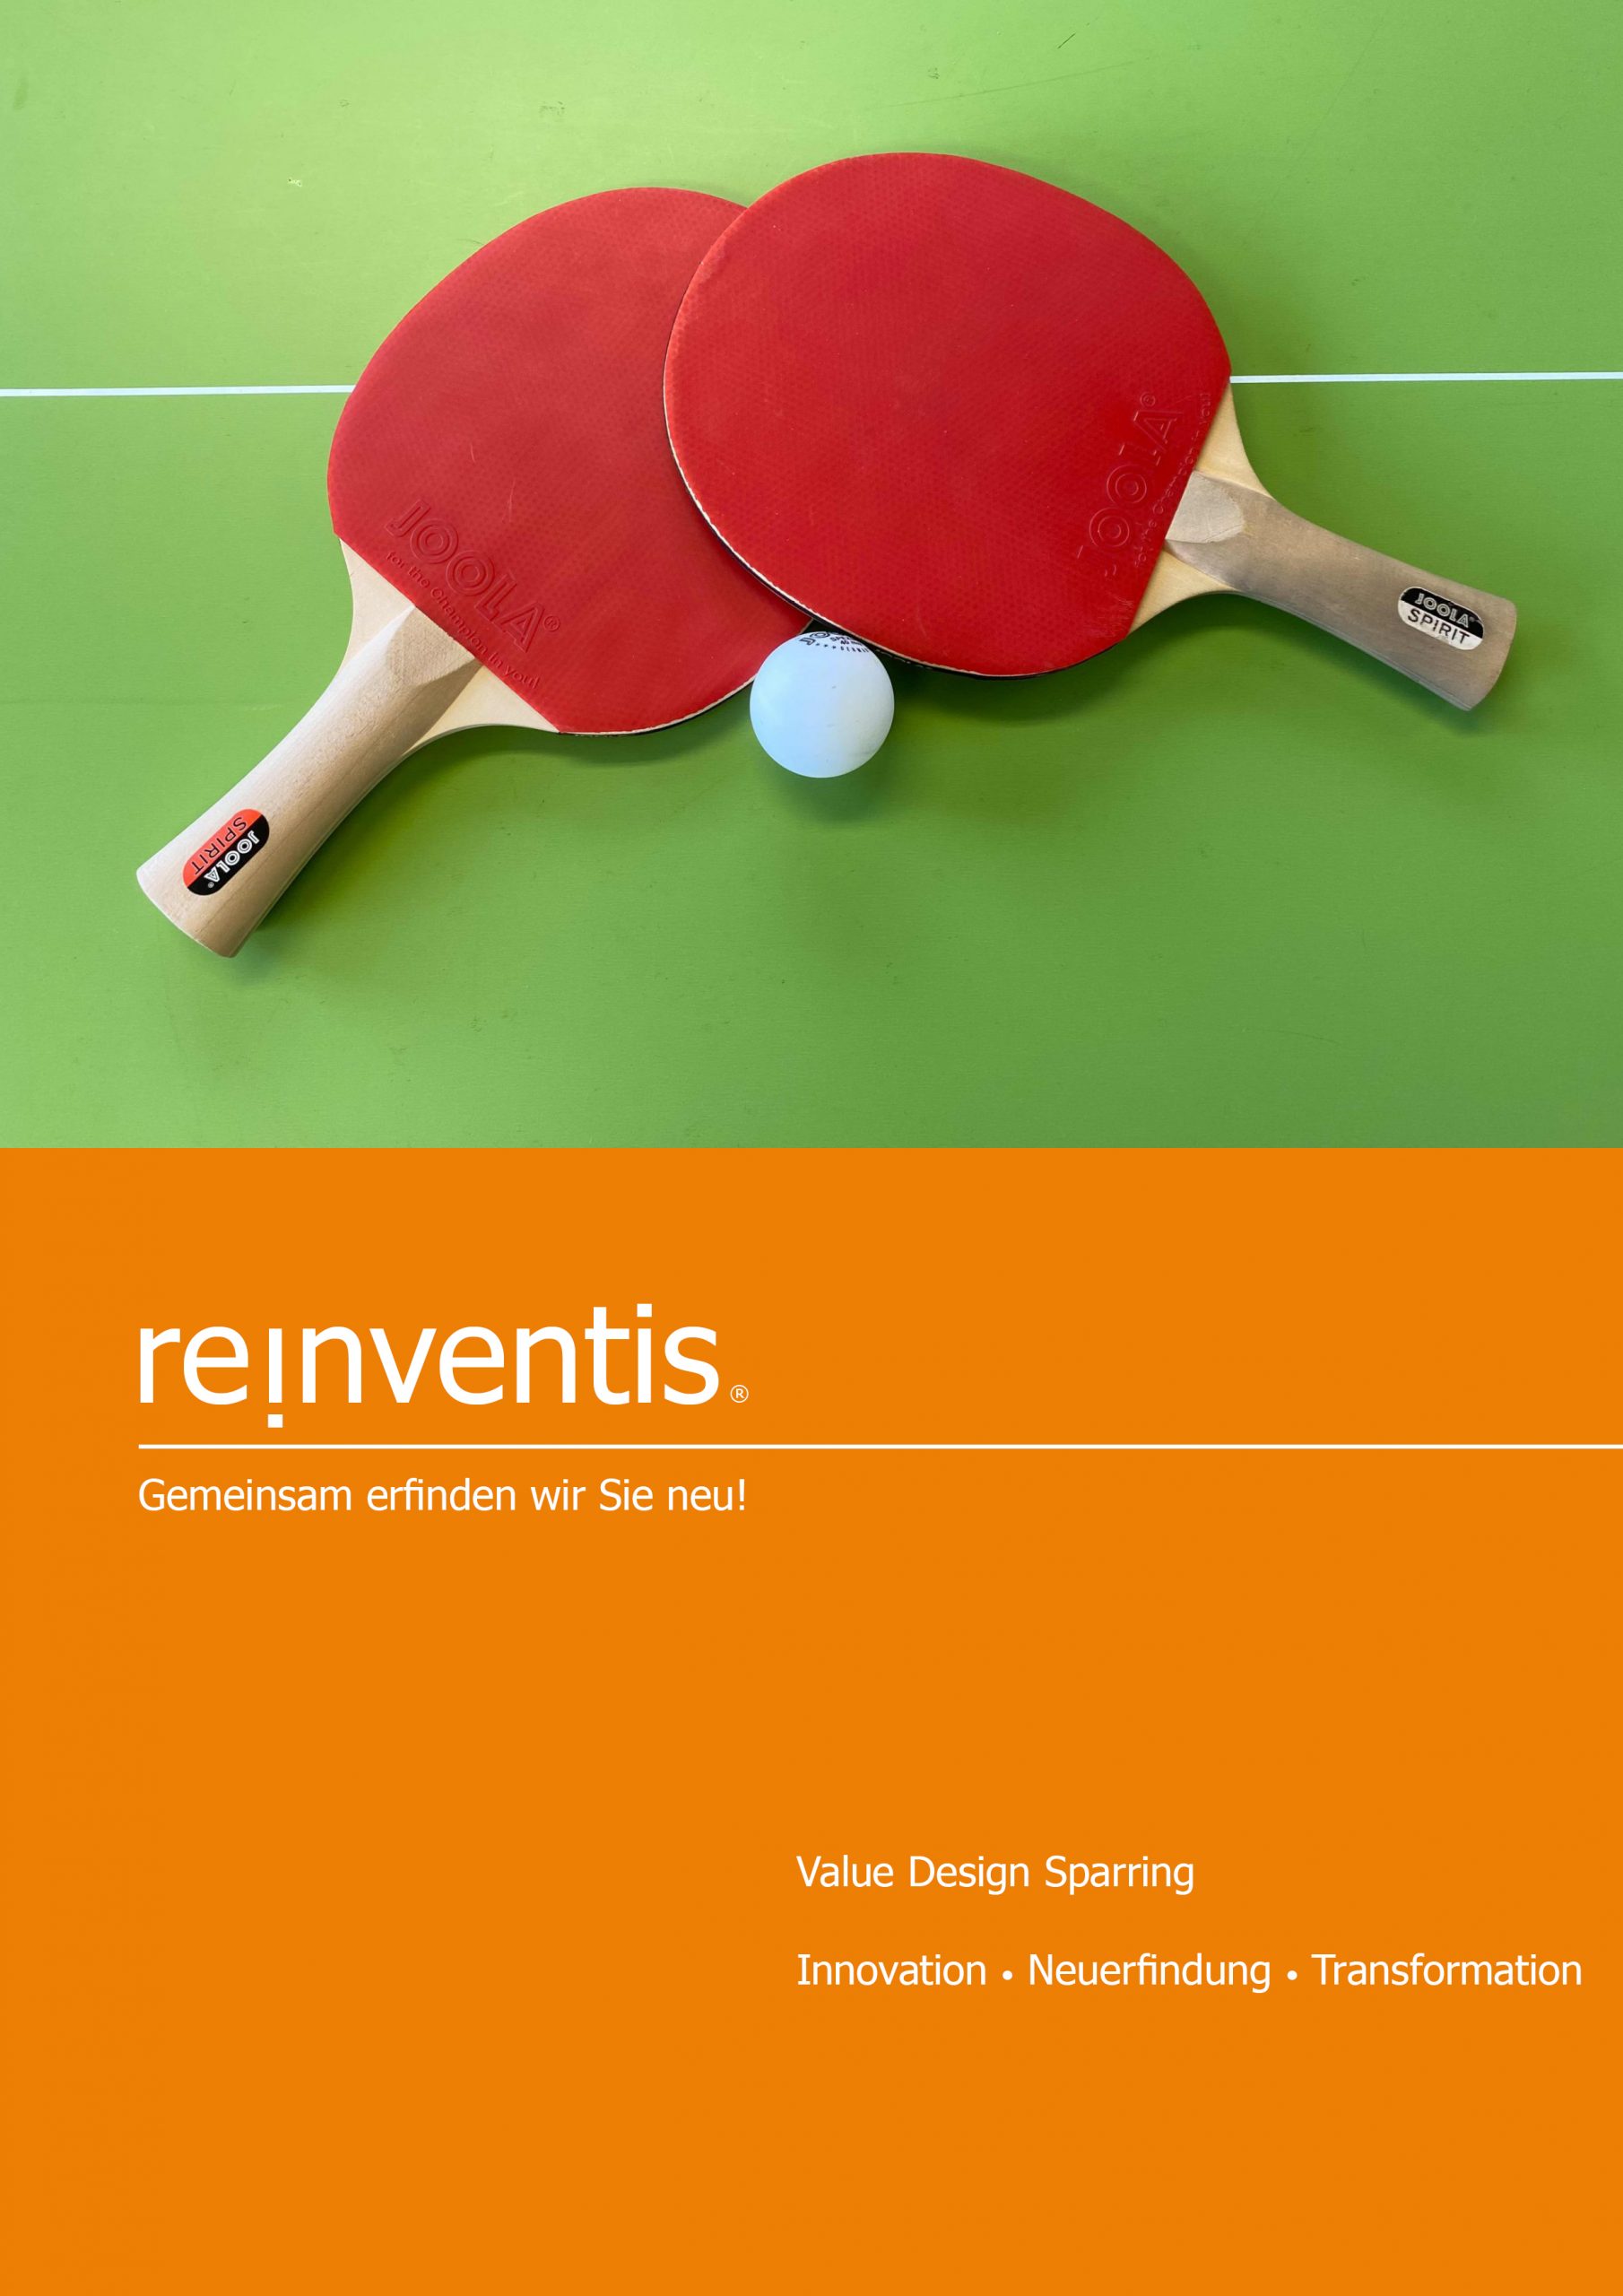 Value Design Sparring - Innovation, Reinvention und Transformation - REINVENTIS - München - Strategieberatung